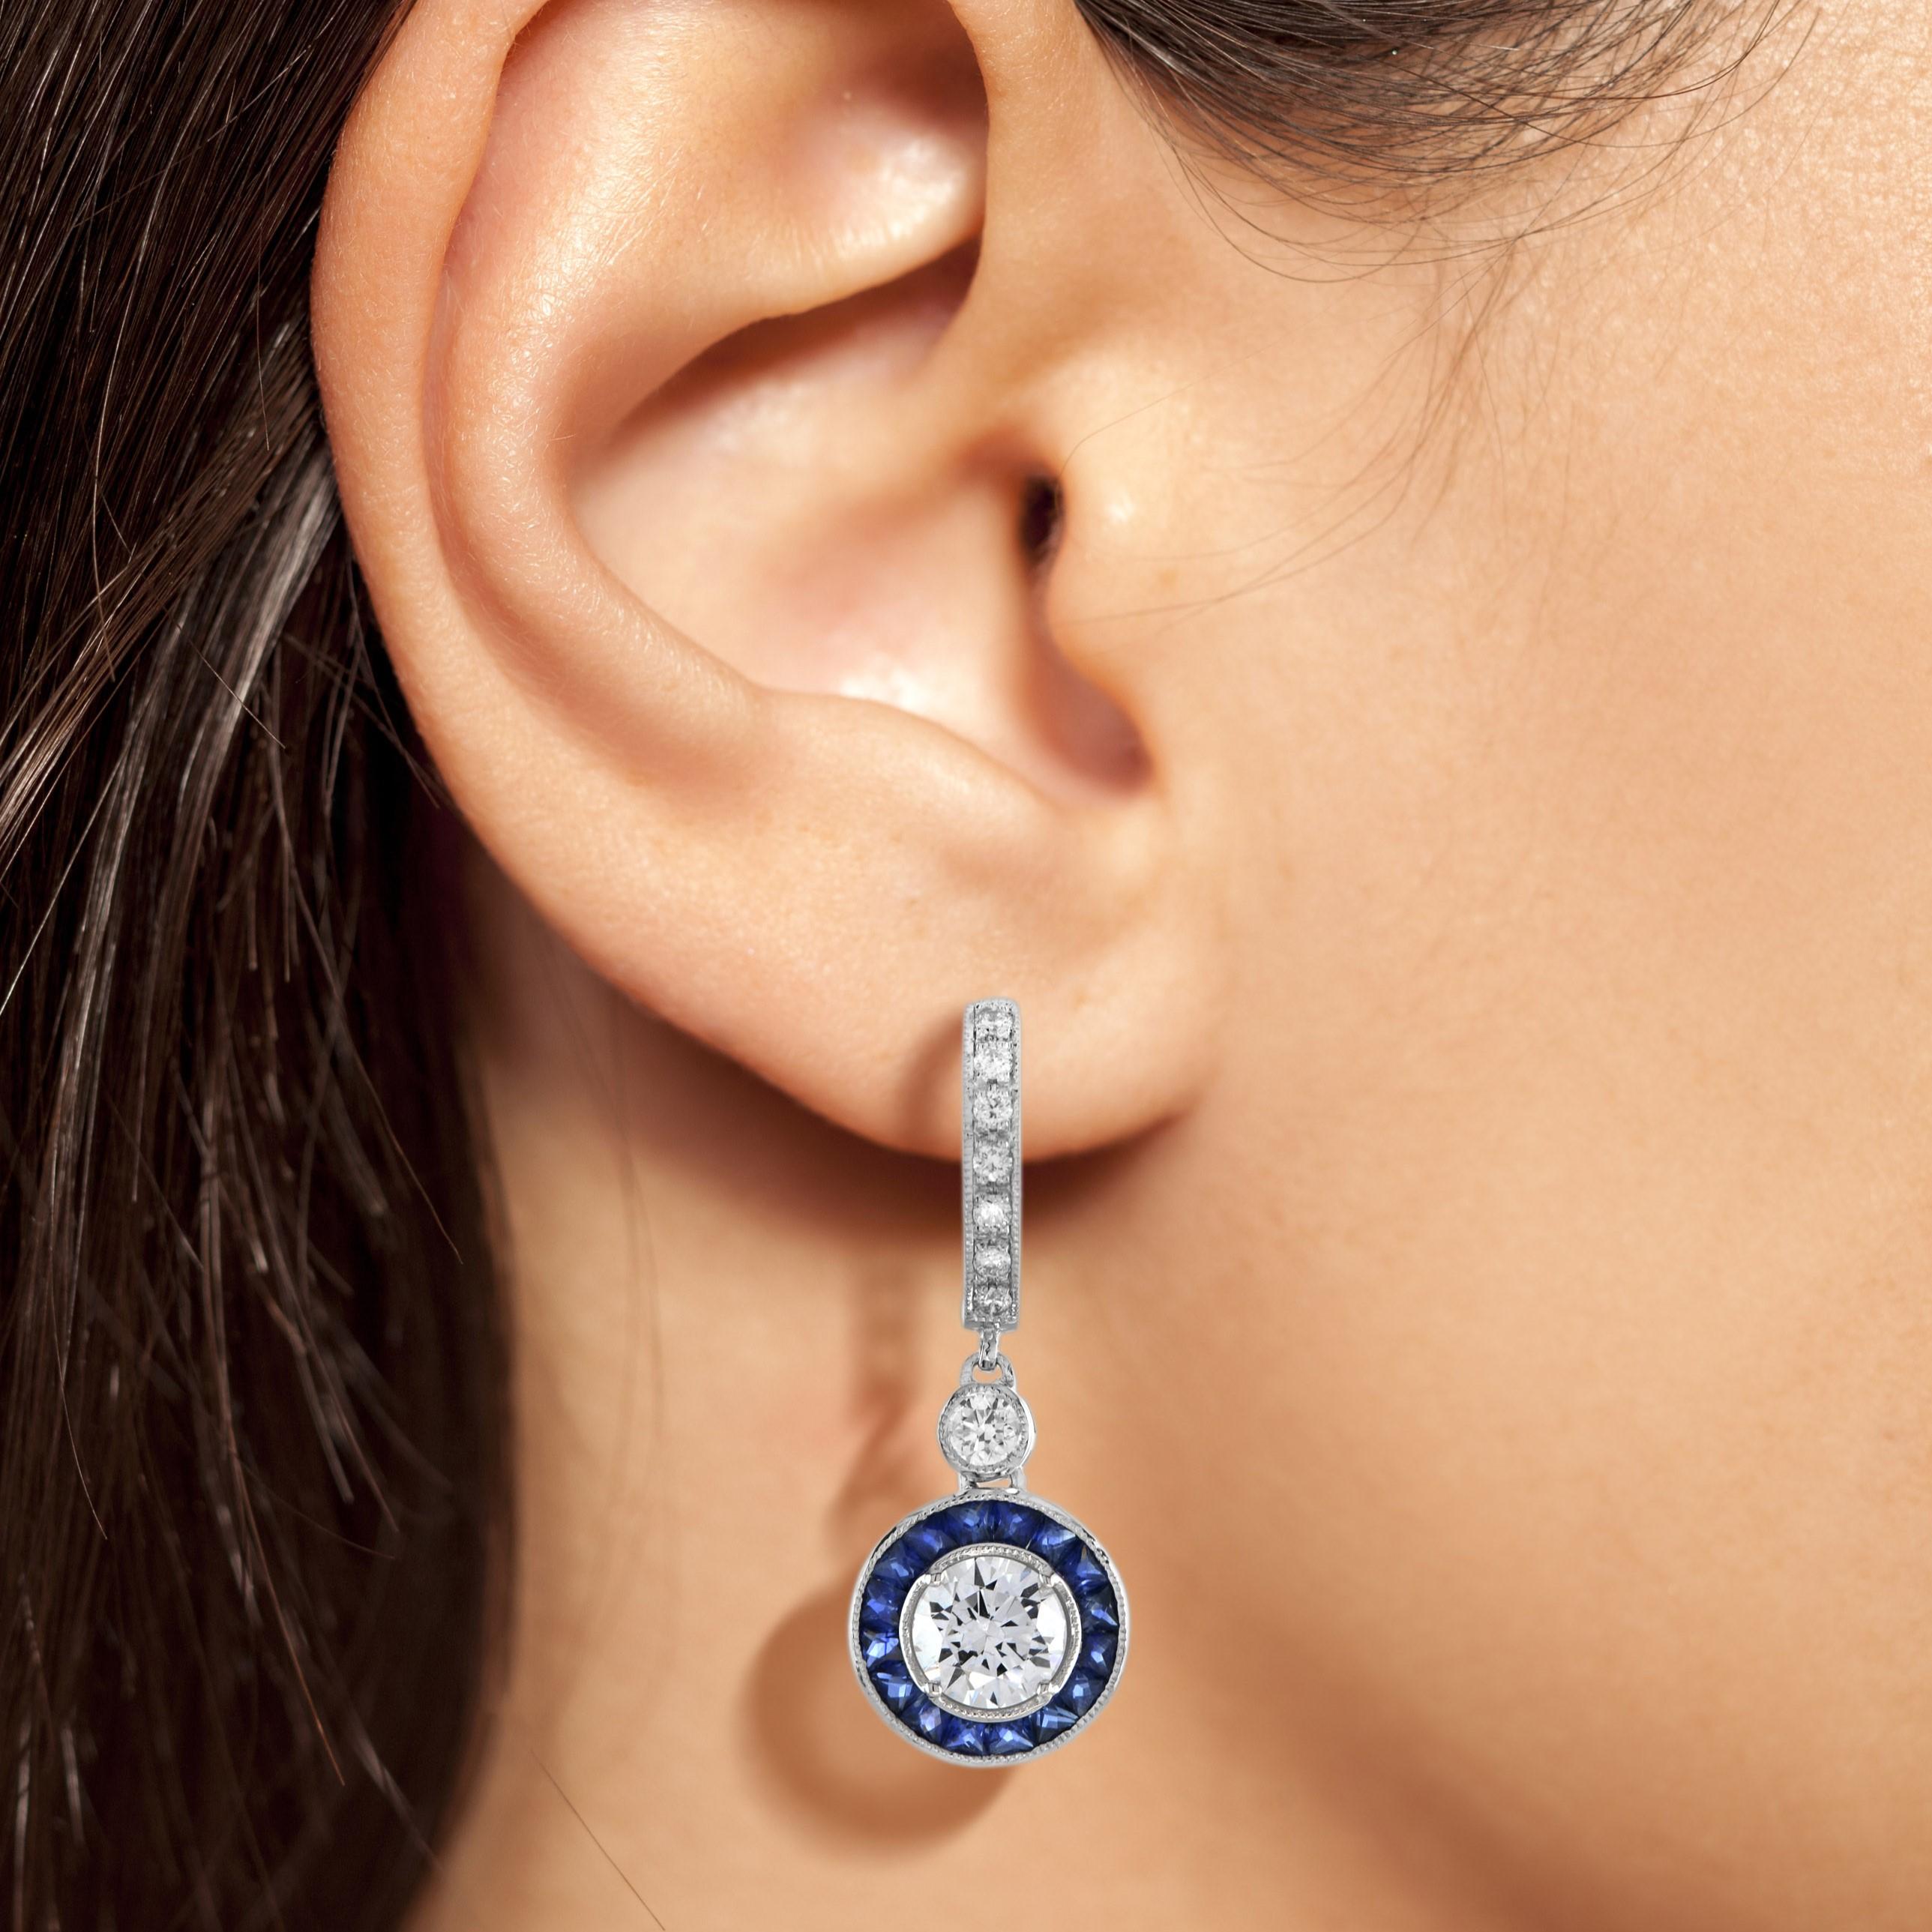 Exquisite, vom frühen Art déco inspirierte Ohrringe mit Diamanten und blauem Saphir. Der zentrale Diamant ist von fein gefassten, doppelten Saphiren umgeben, die eine schicke achteckige Form bilden. Die Ohrringe können perfekt mit dem Halo-Ring im